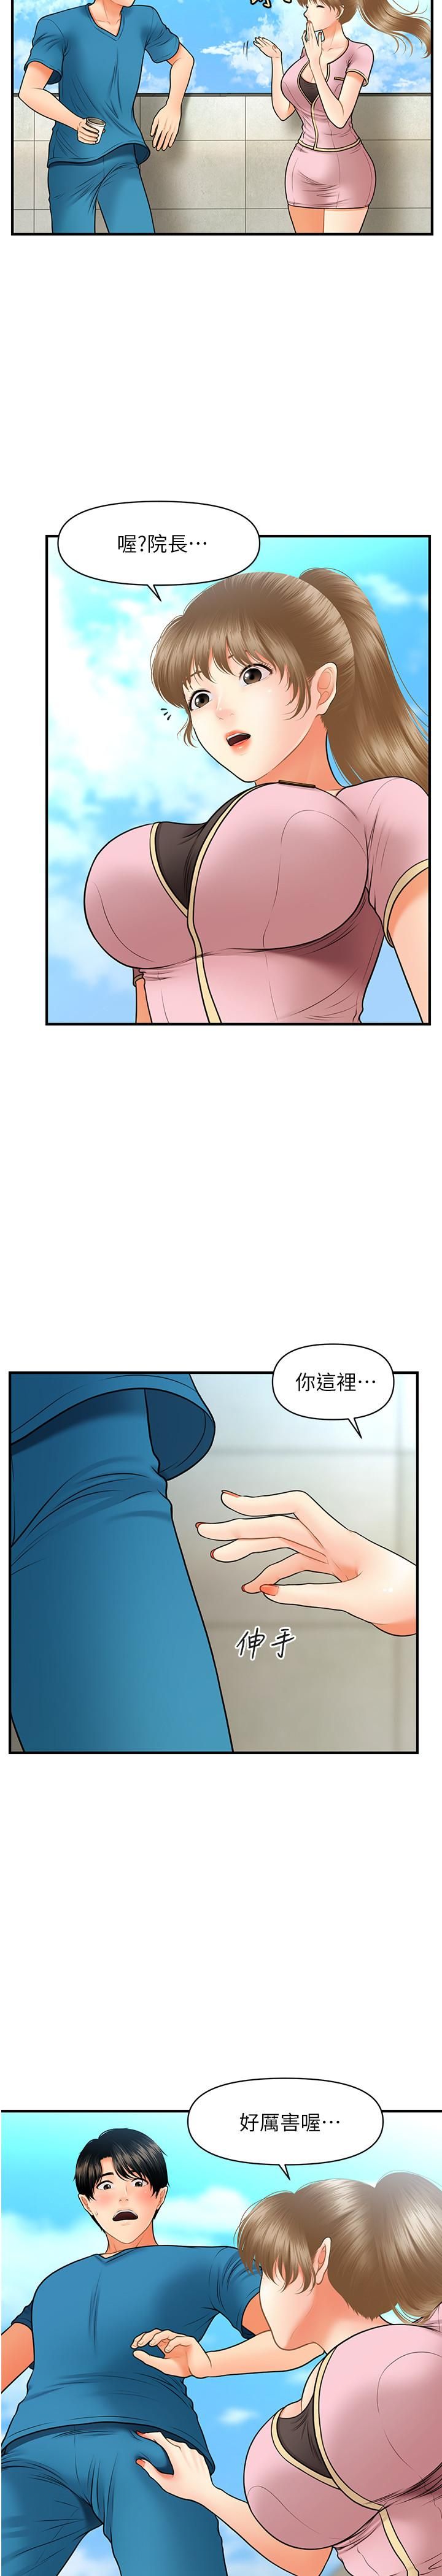 《医美奇鸡》漫画 第25话 - 积极勾引成功的立娴?